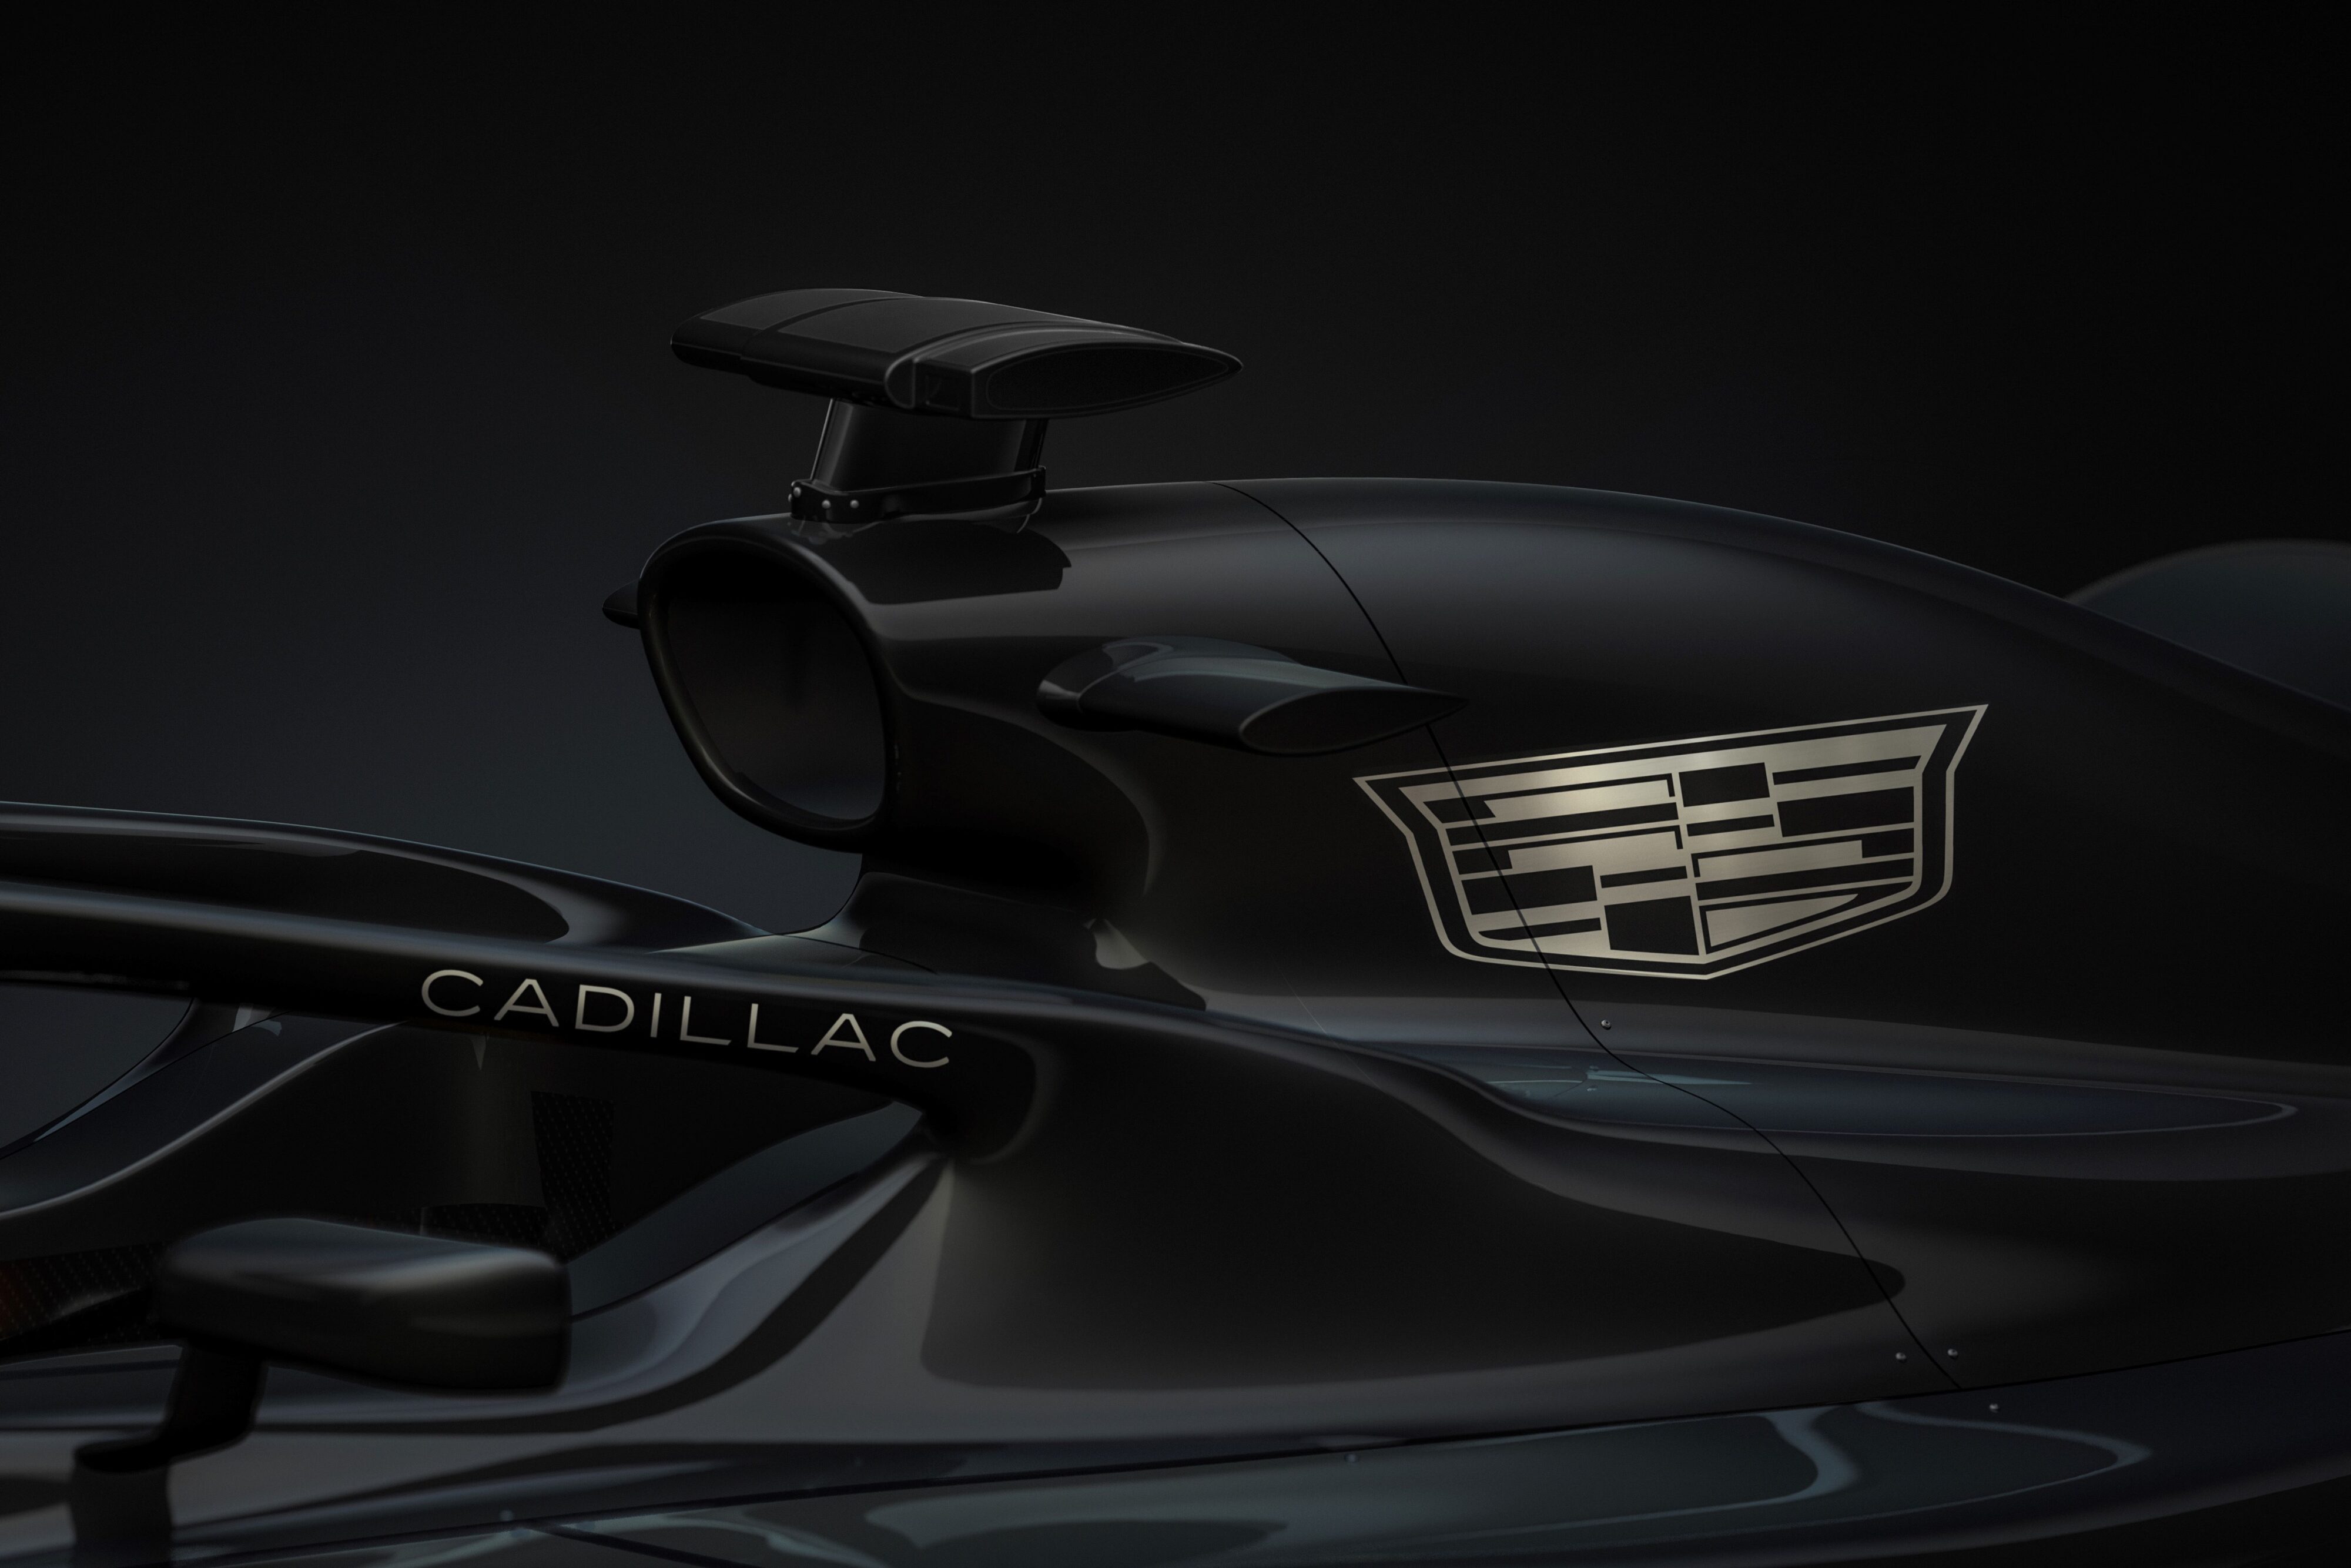 A teaser of the Cadillac Andretti F1 team car